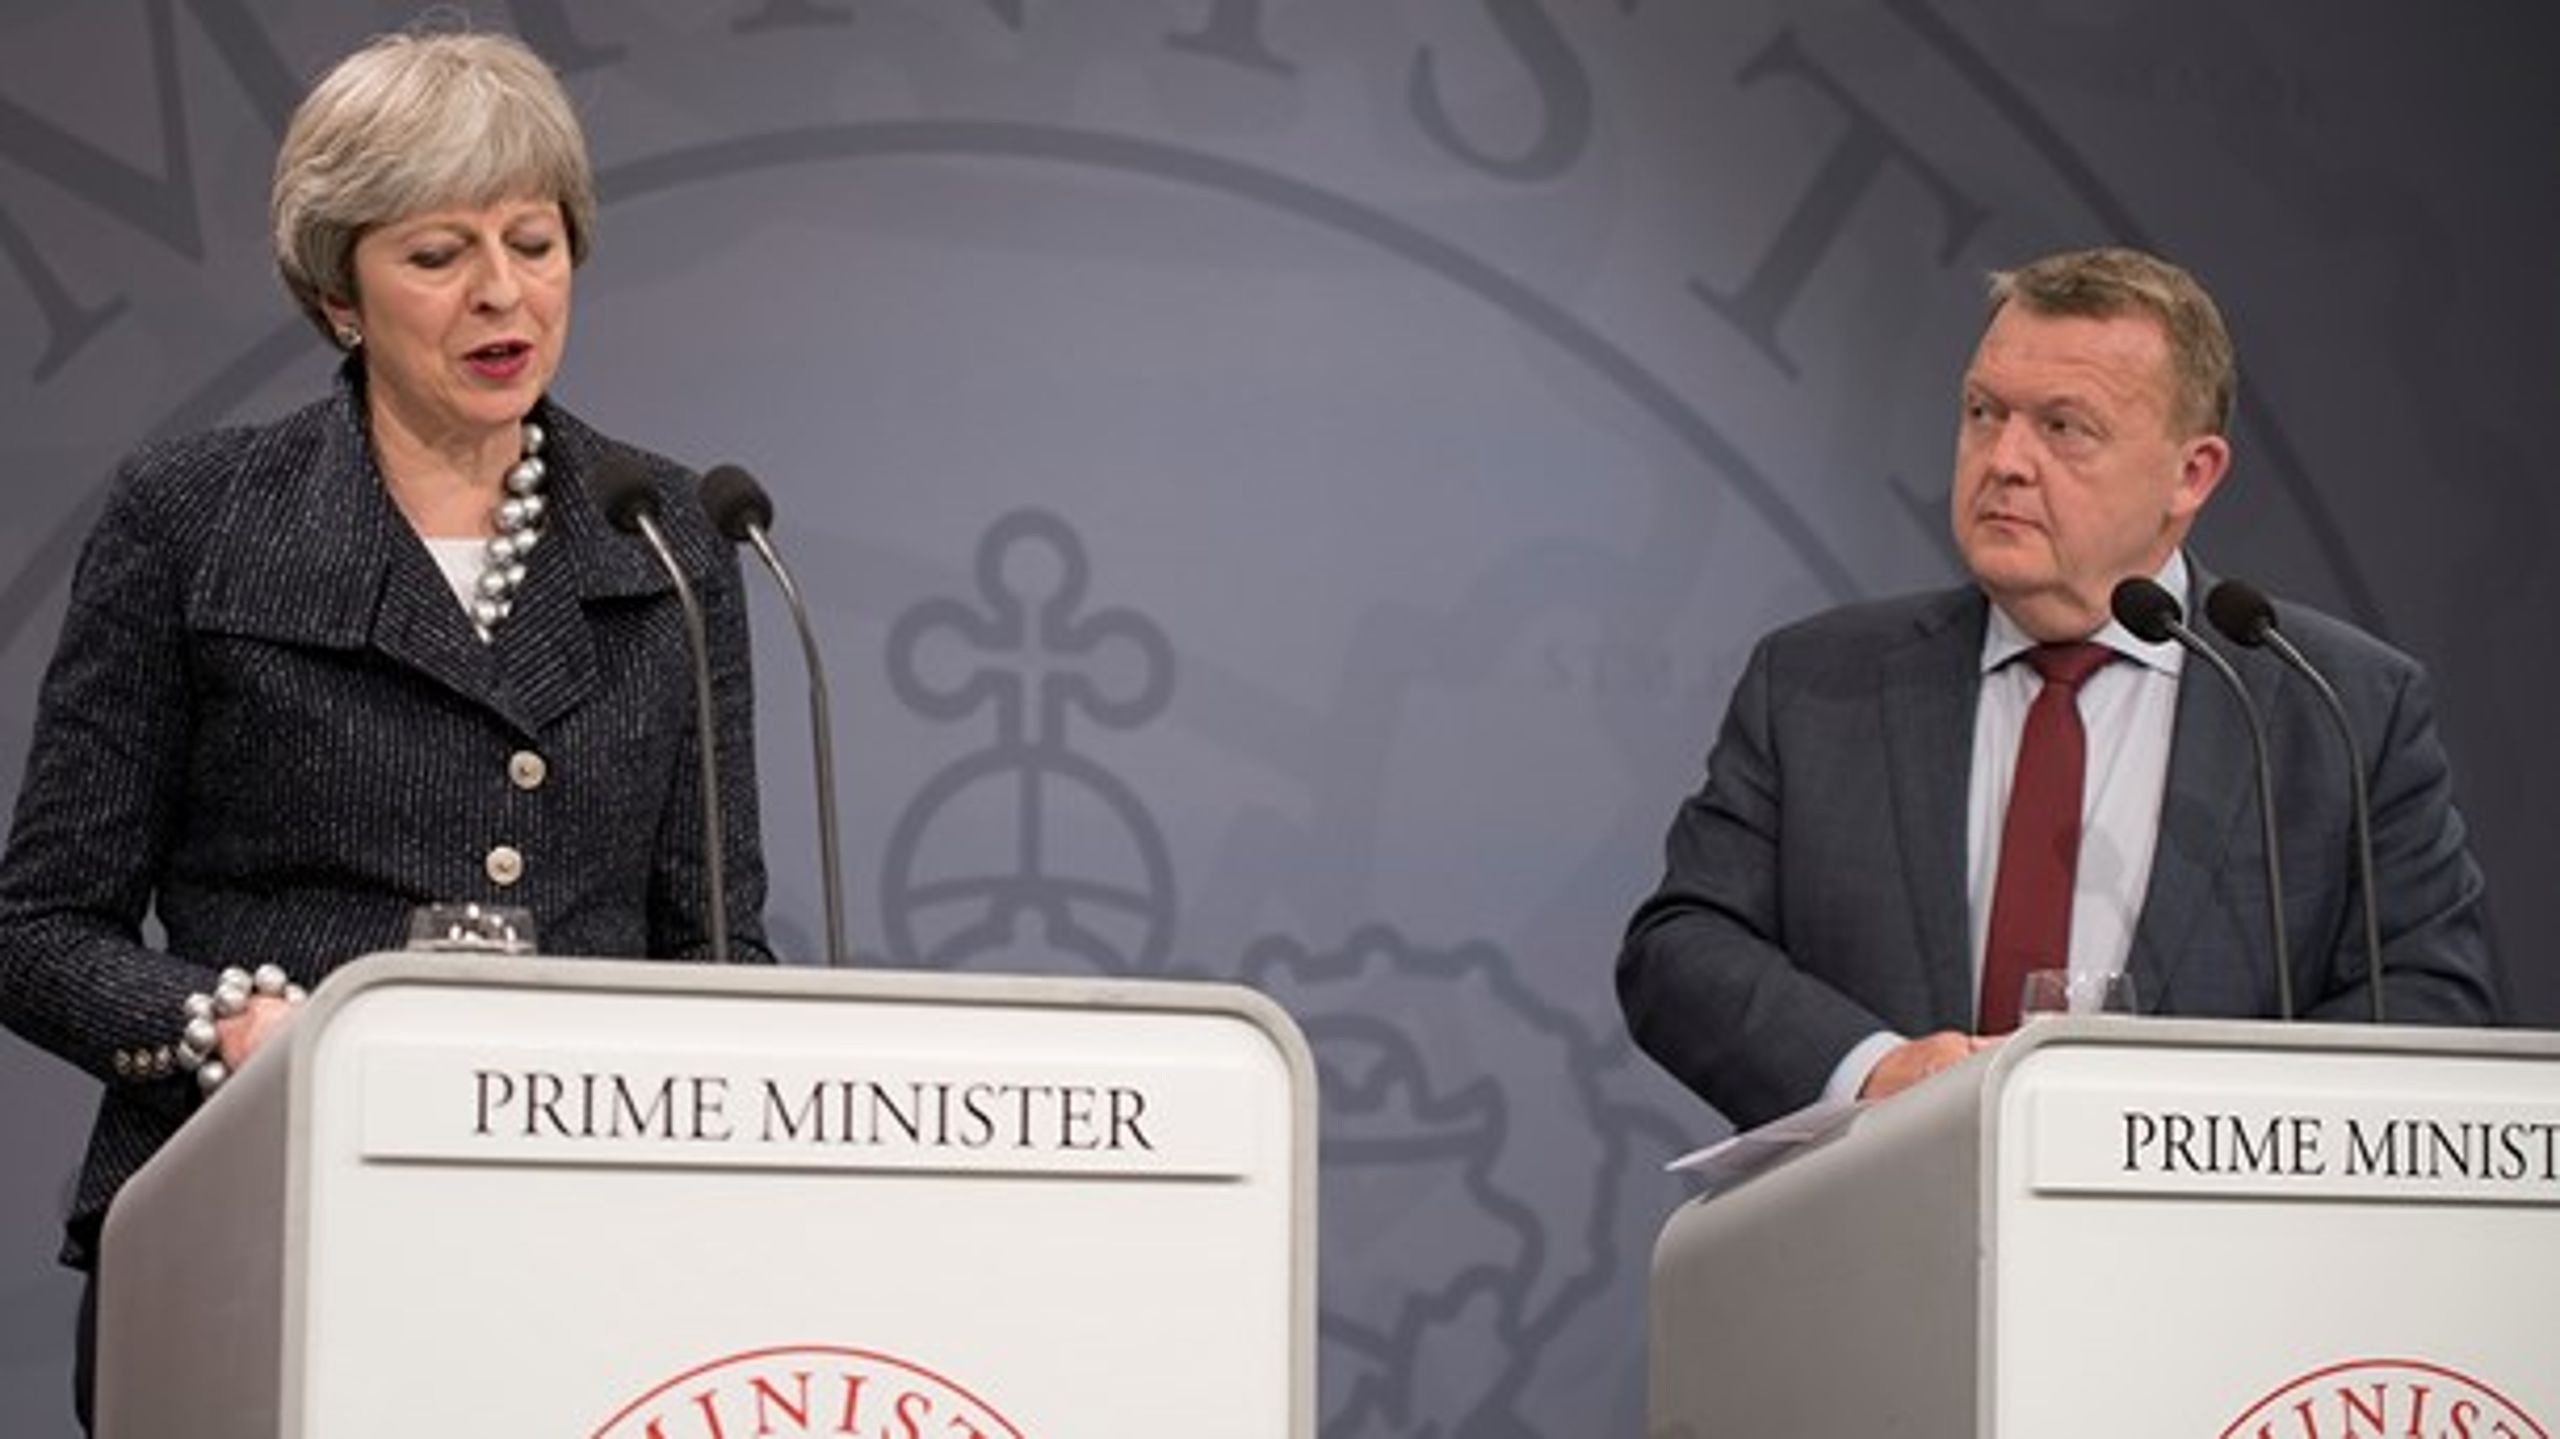 Lars Løkke Rasmussen behøver tilsyneladende ikke spørge Storbritanniens premierminister, Theresa May, til råds om en fremtid uden for EU. Ifølge en ny måling er danskernes støtte til en folkeafstemning om EU-udtræden faldende.